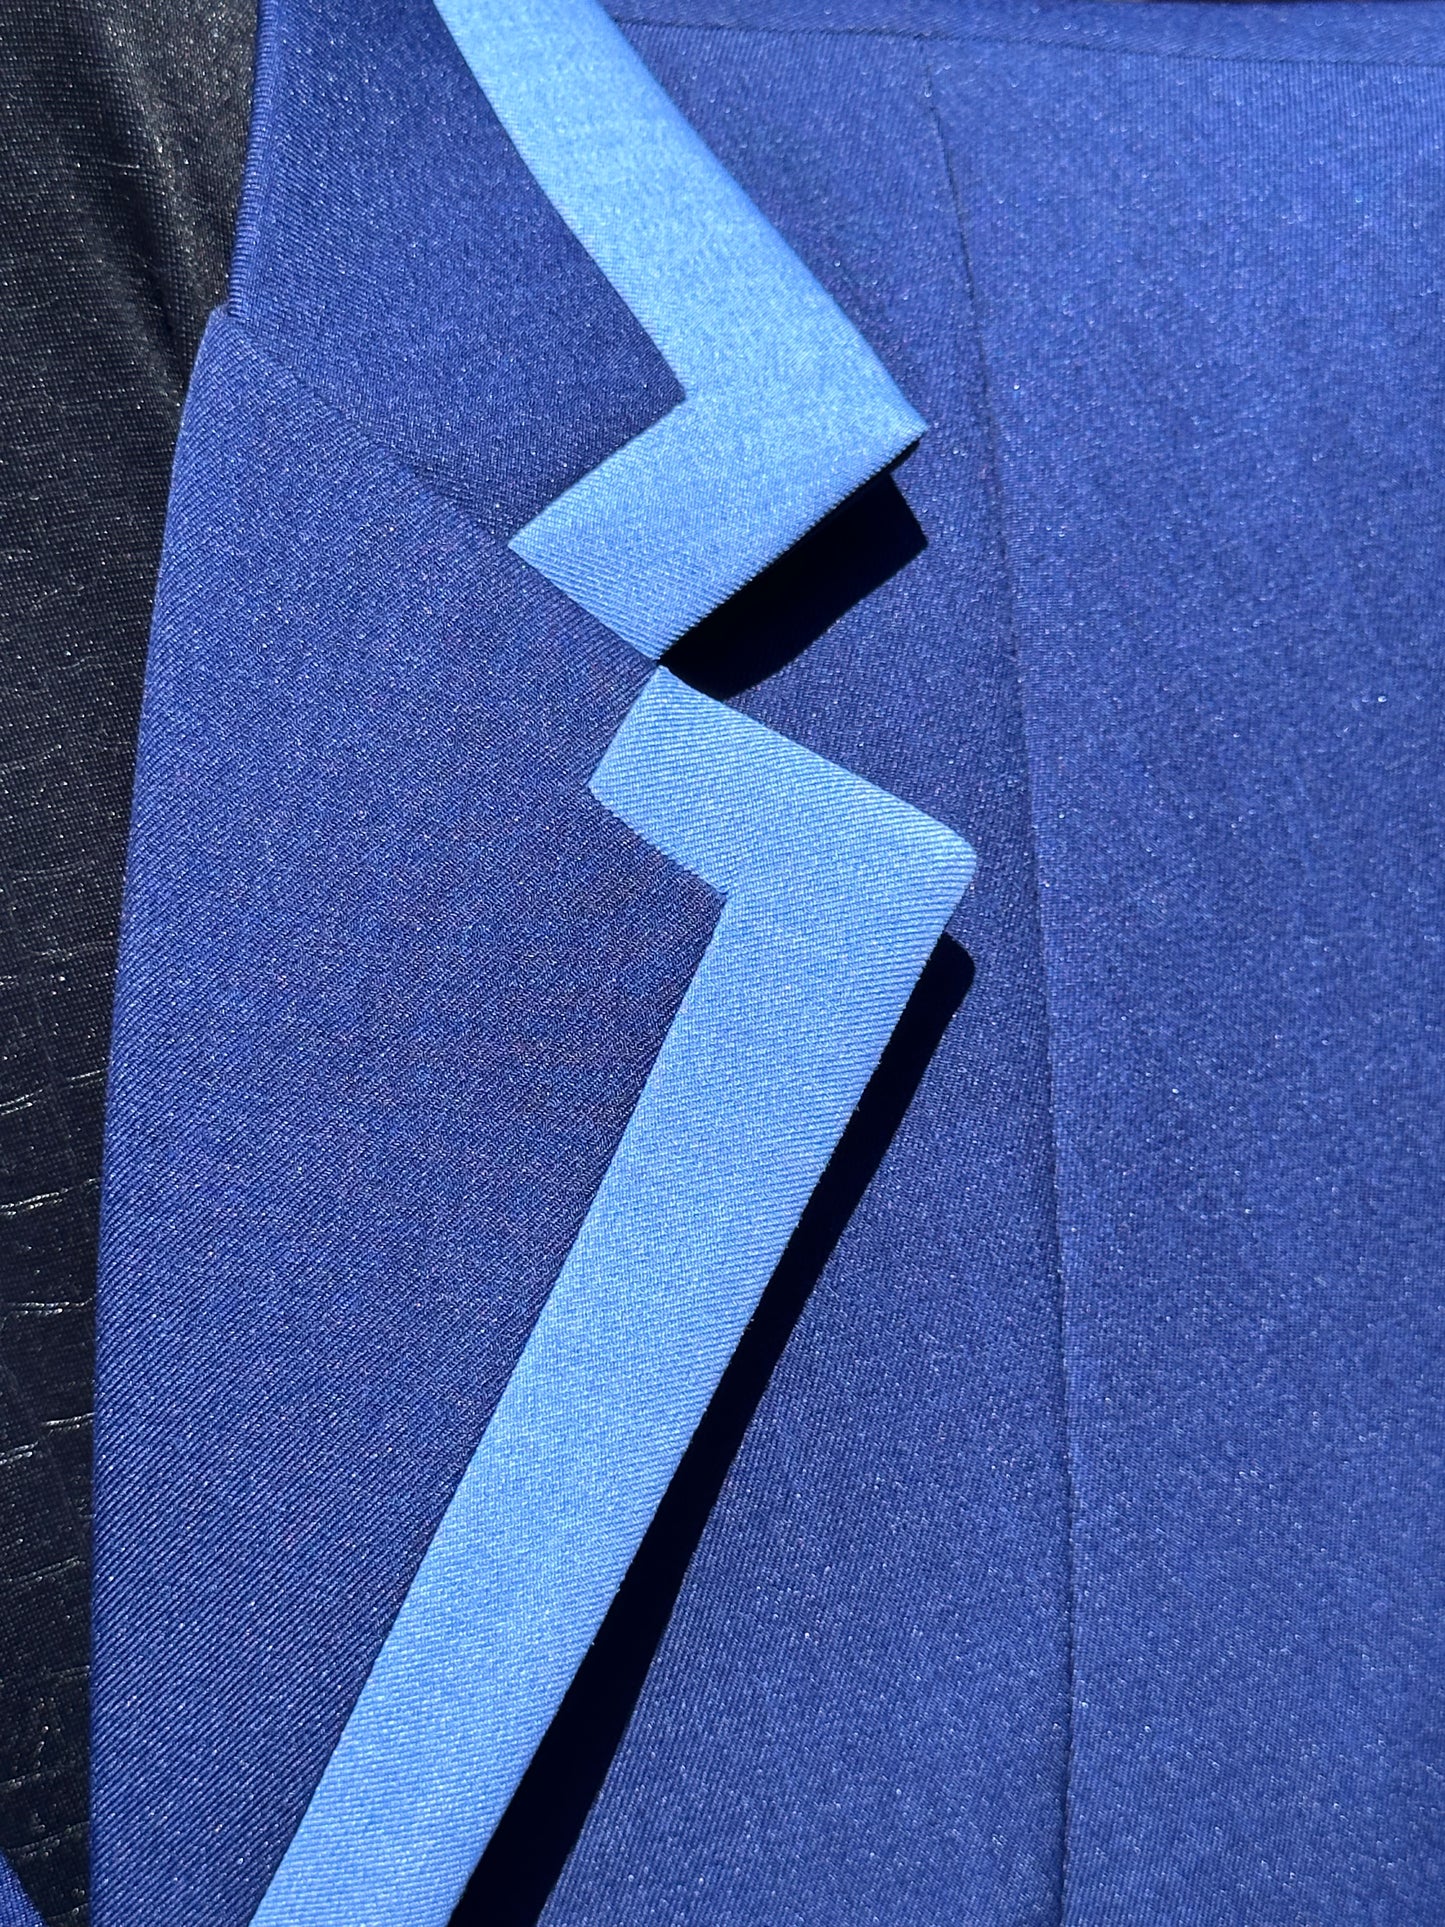 #NKpant/coat Showmanship/Halter Suit 46 bust Royal blue